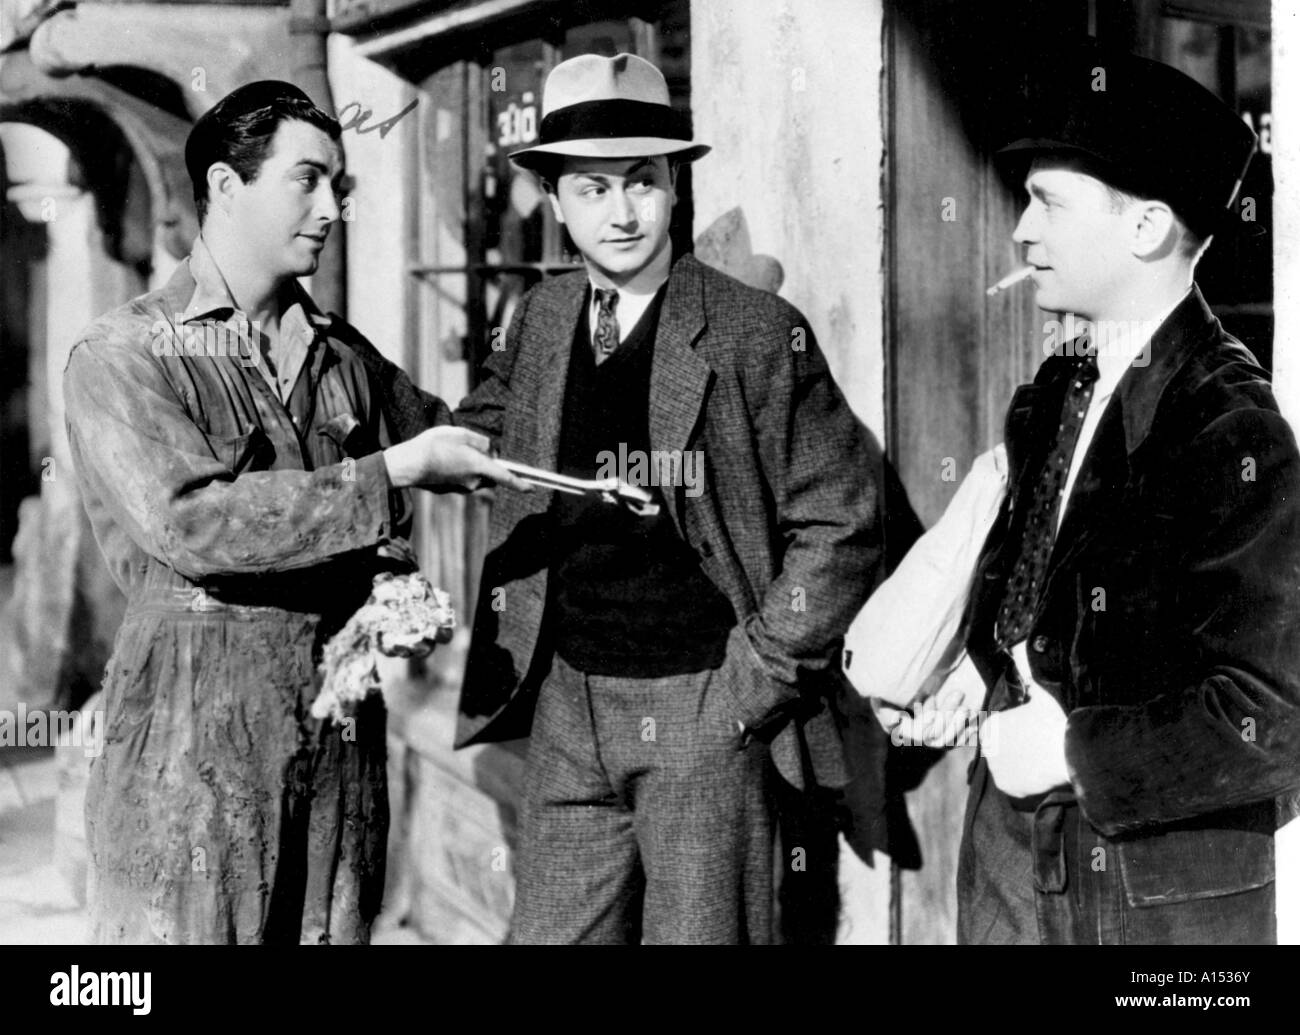 Trois camarades Année 1938 réalisateur Frank Borzage Robert Young Franchot Tone Robert Taylor basé sur le livre de Erich Maria Remarque Banque D'Images